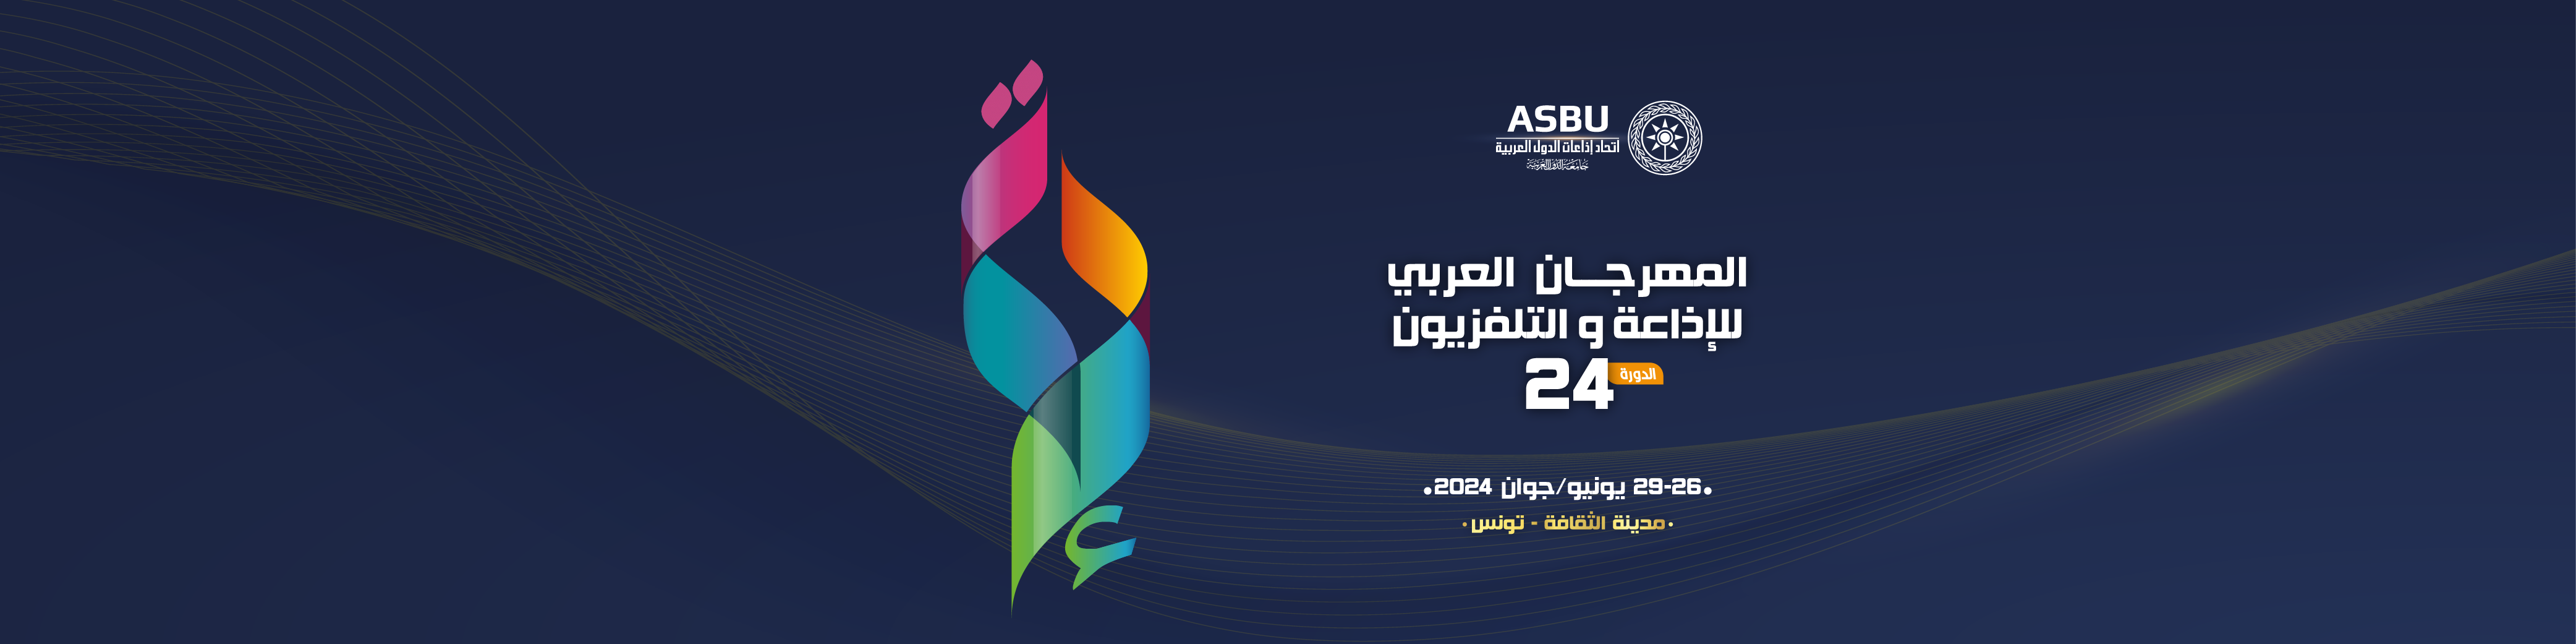 الدورة 24 للمهرجان العربي للإذاعة والتلفزيون تحت شعار" نصرة فلسطين "